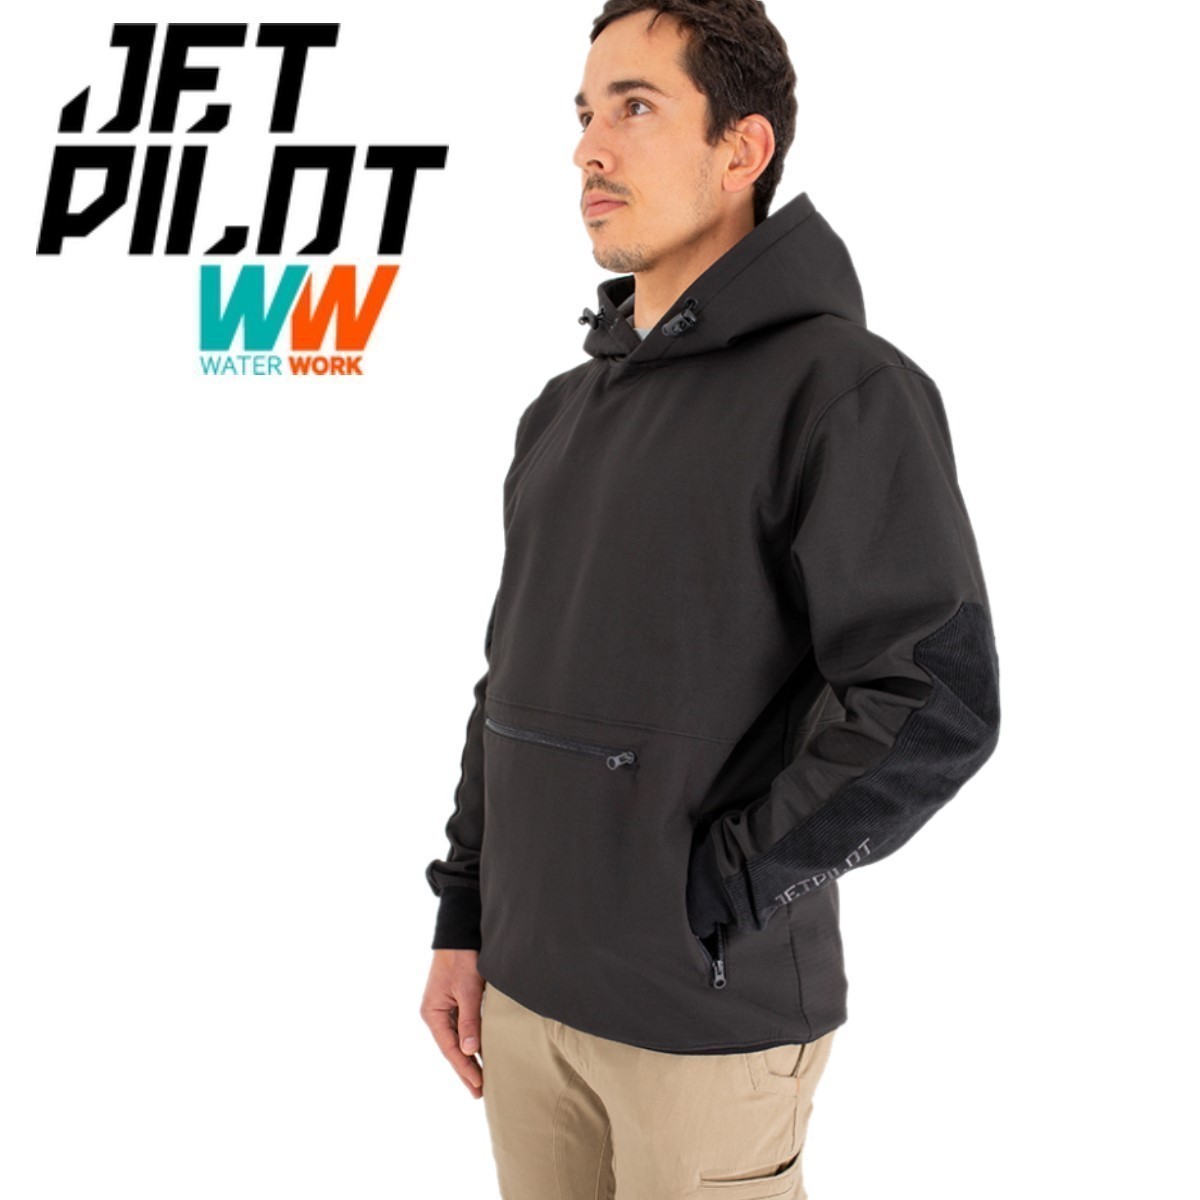 魅力的な ジェットパイロット JETPILOT 多機能 高品質 フーディー XL ブラック JPW75 エリート 2.0 レベルド 送料無料 マリン メンズ パーカー ウエア